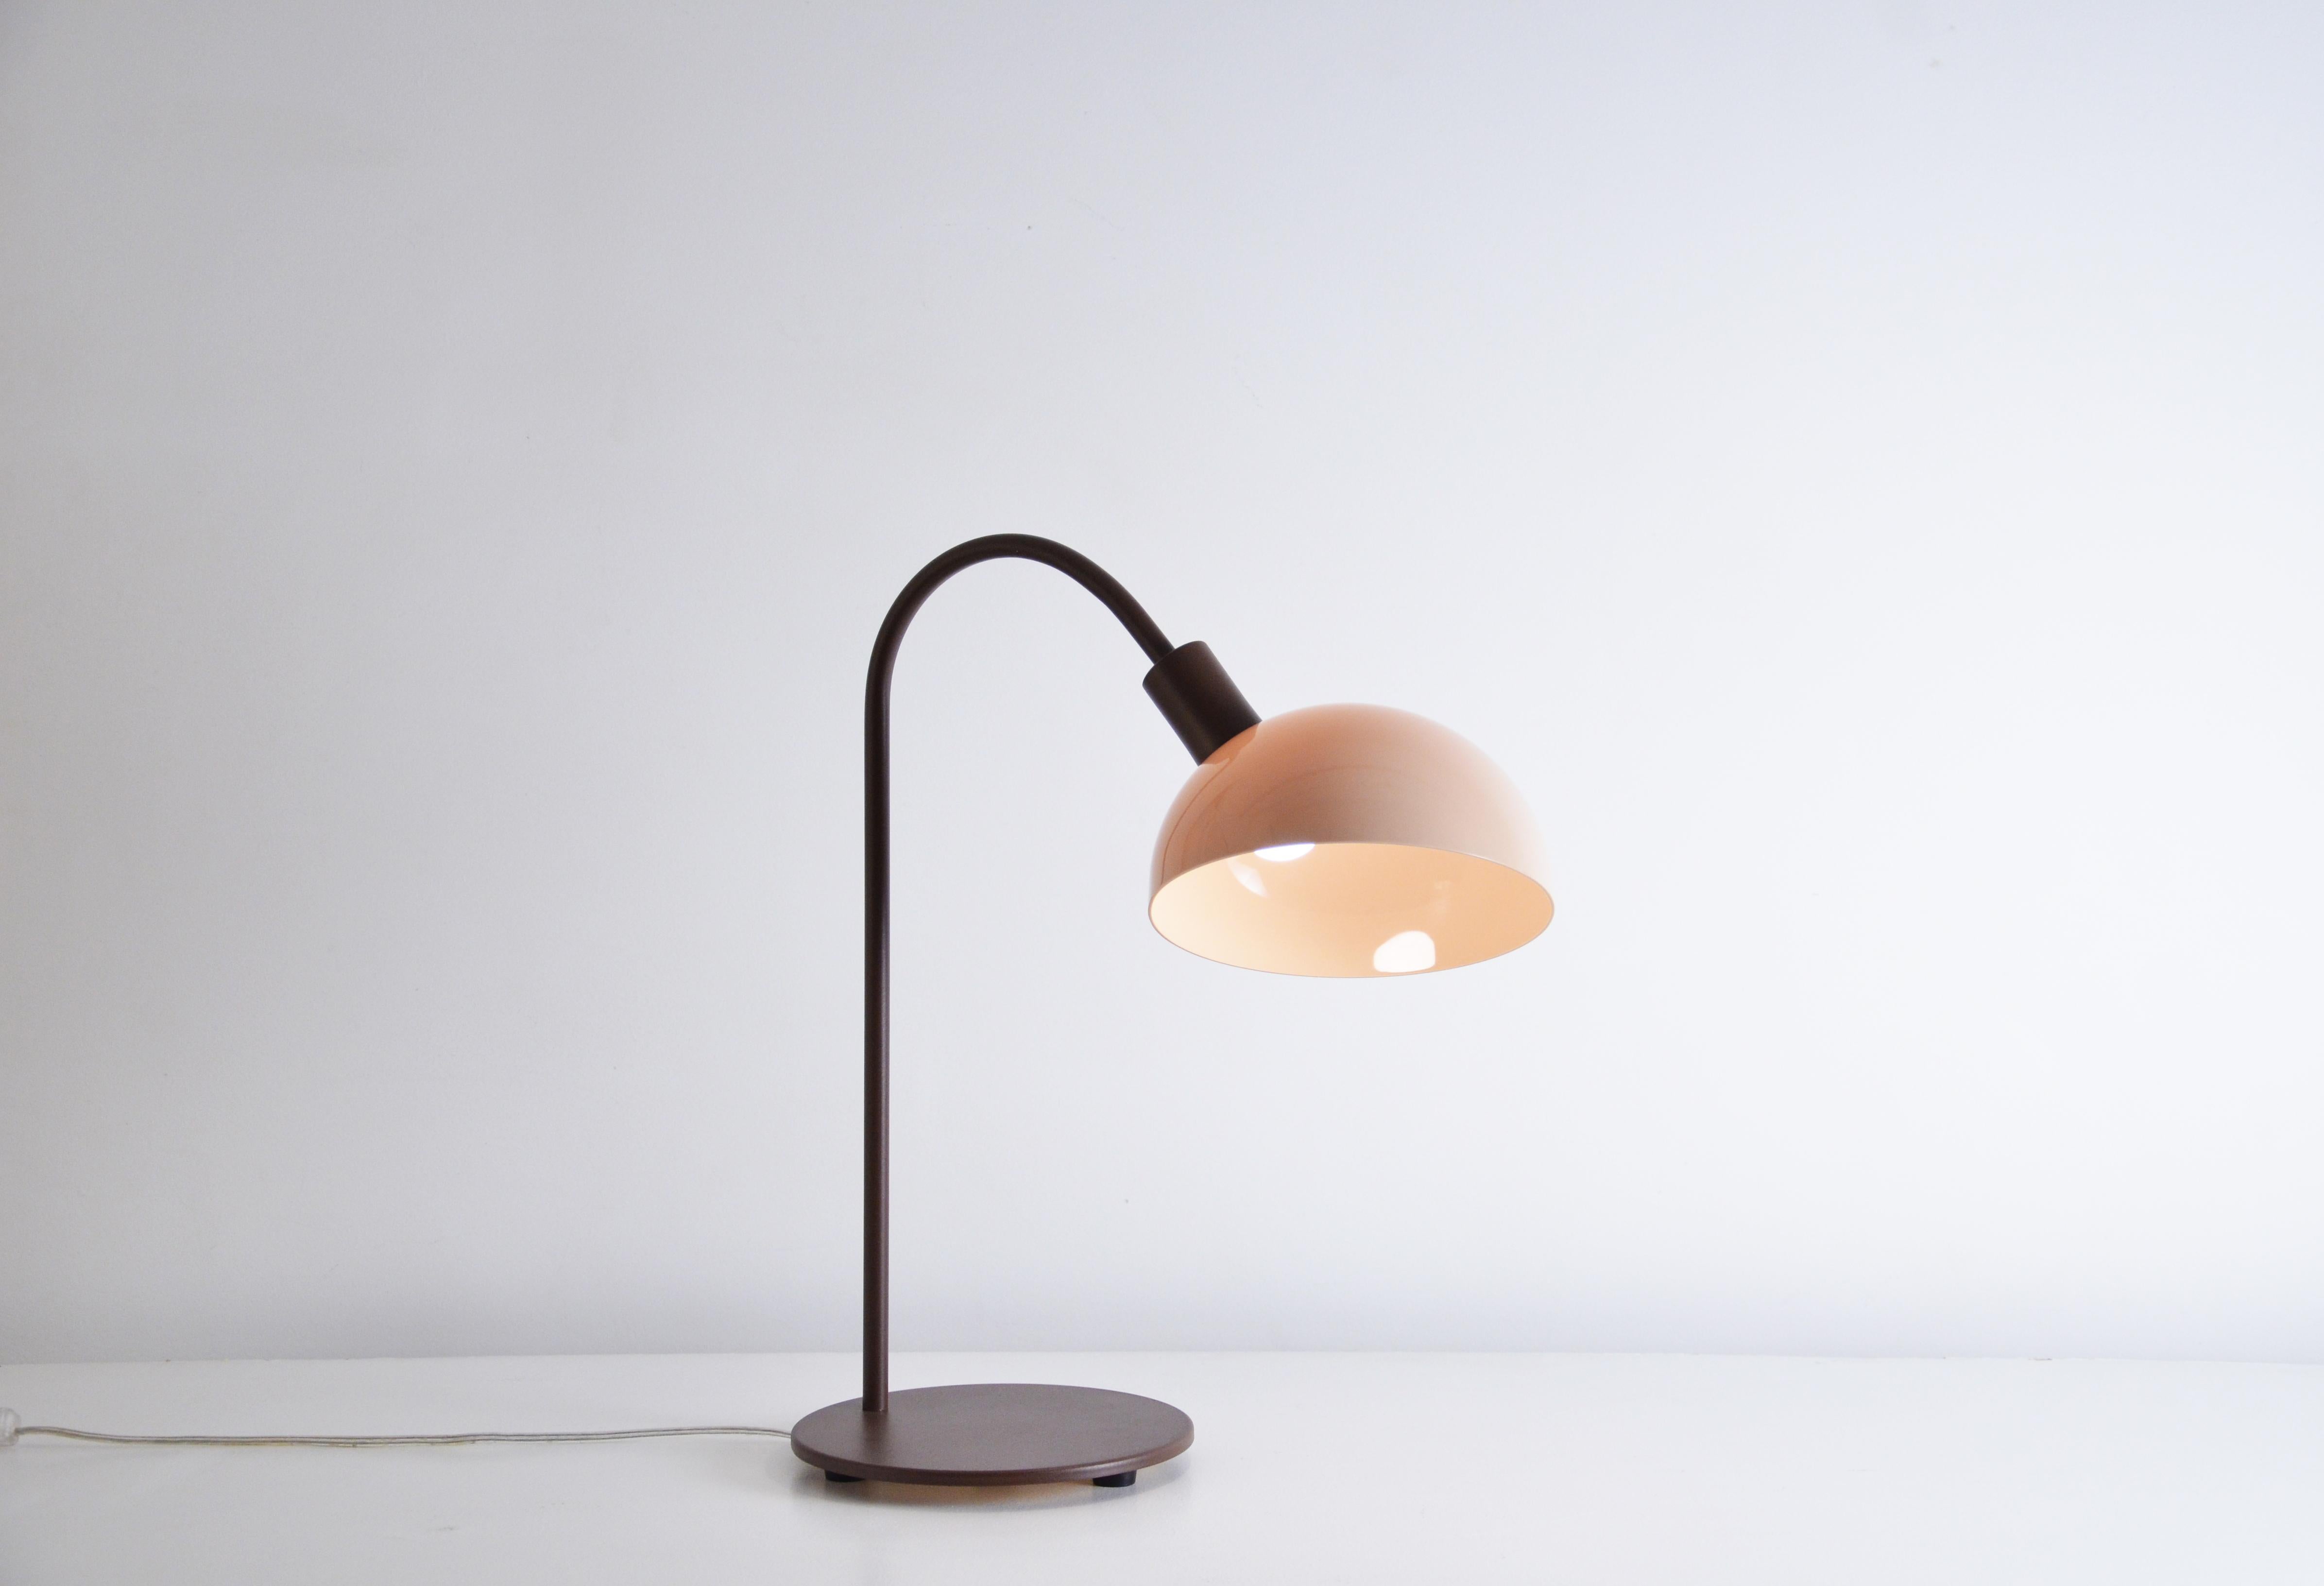 Cette lampe de table s'appelle Lichia. 
Le produit se compose d'un diffuseur acrylique rond et d'une base en bois.
La base est en bois, de forme arrondie et avec une finition vernie, ce qui donne un aspect brillant à la pièce.
Le diffuseur est en